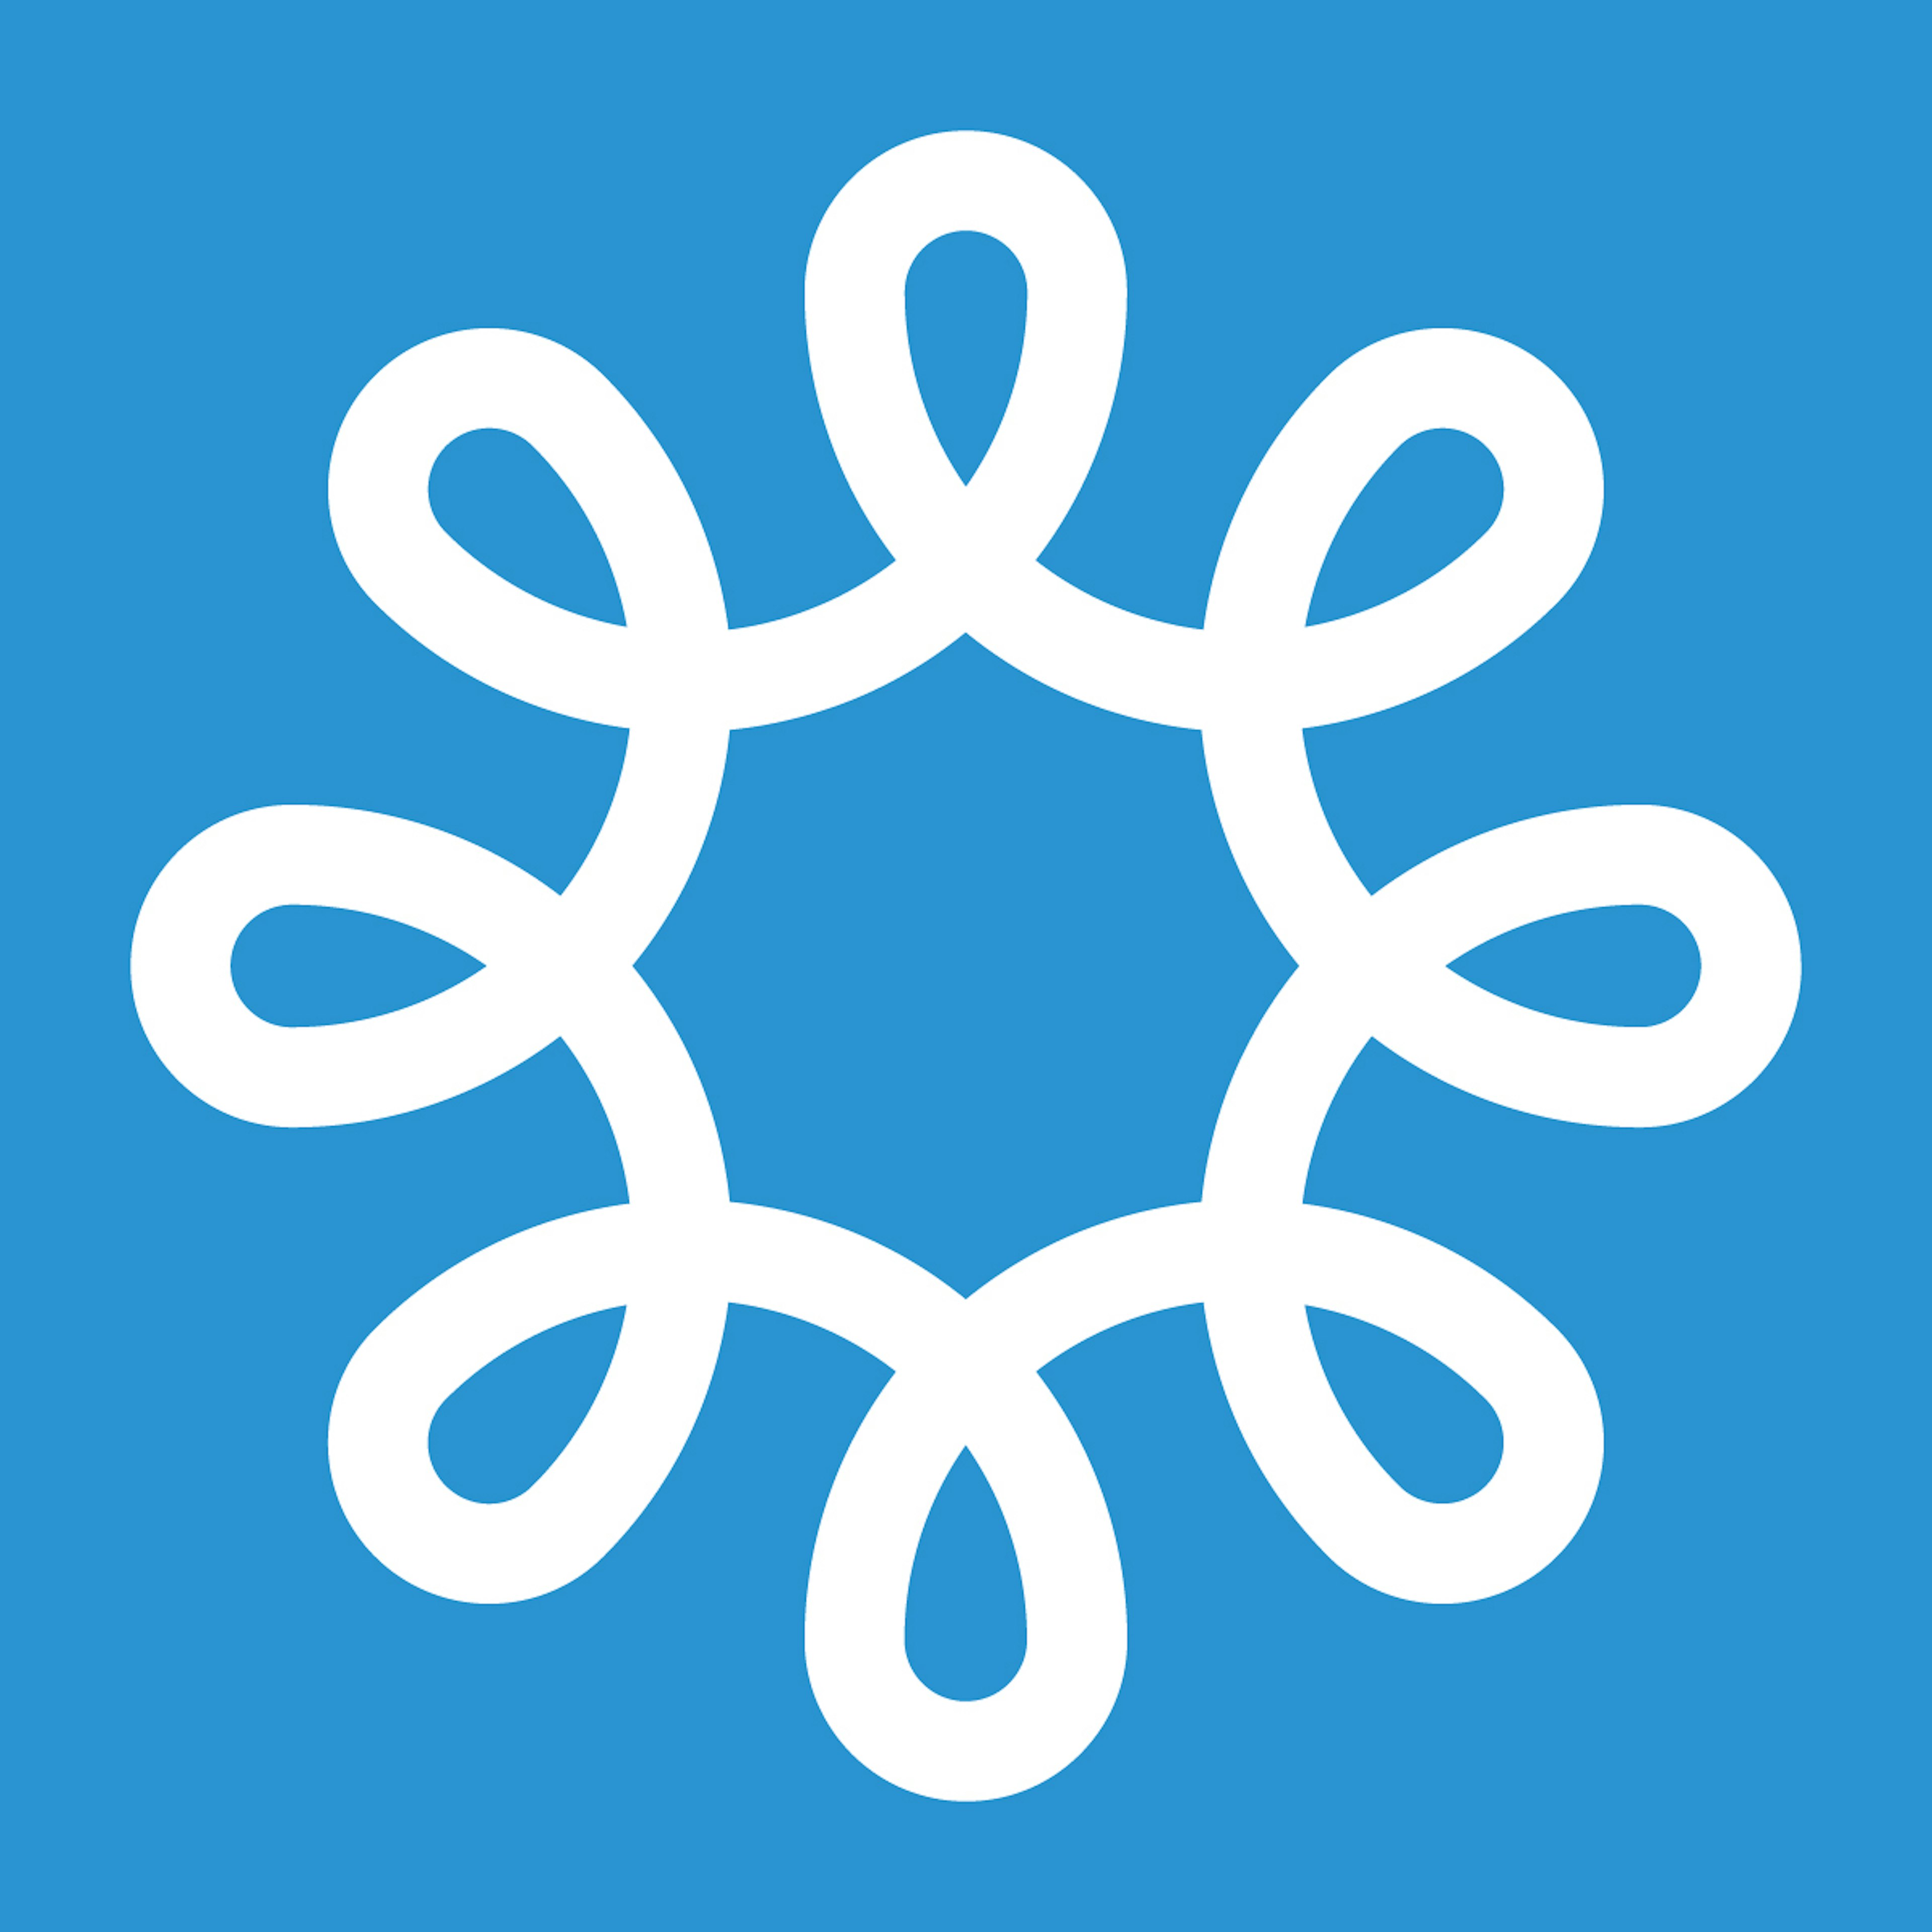 MemberClicks Logo